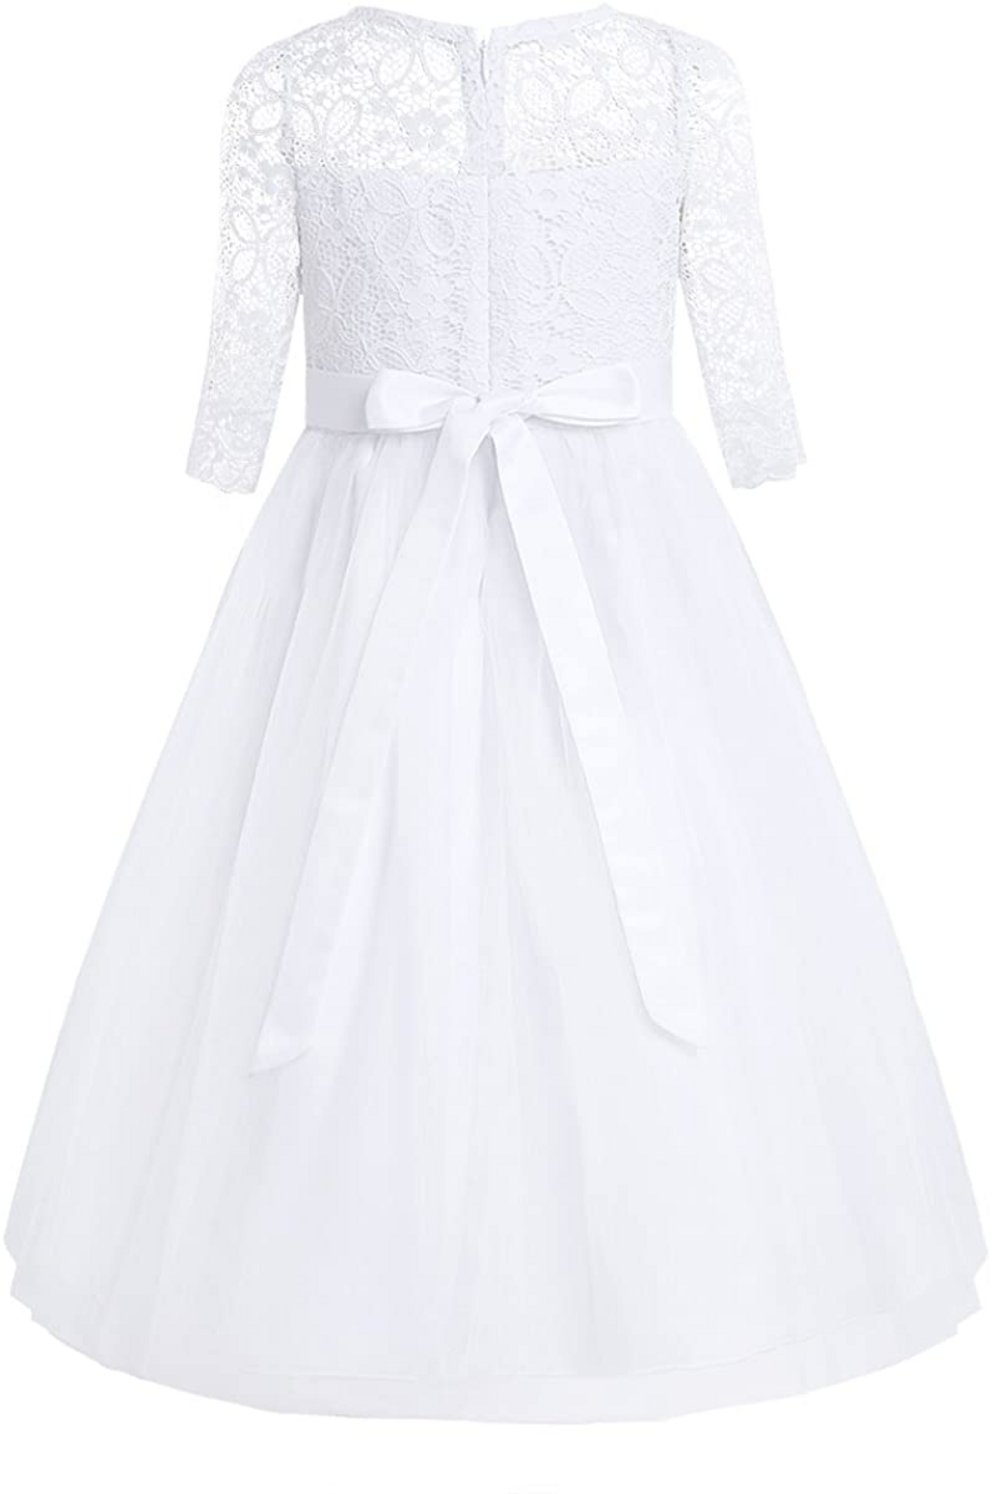 Kommunionkleider: Weißes Kleid mit Spitze für die Kommunion